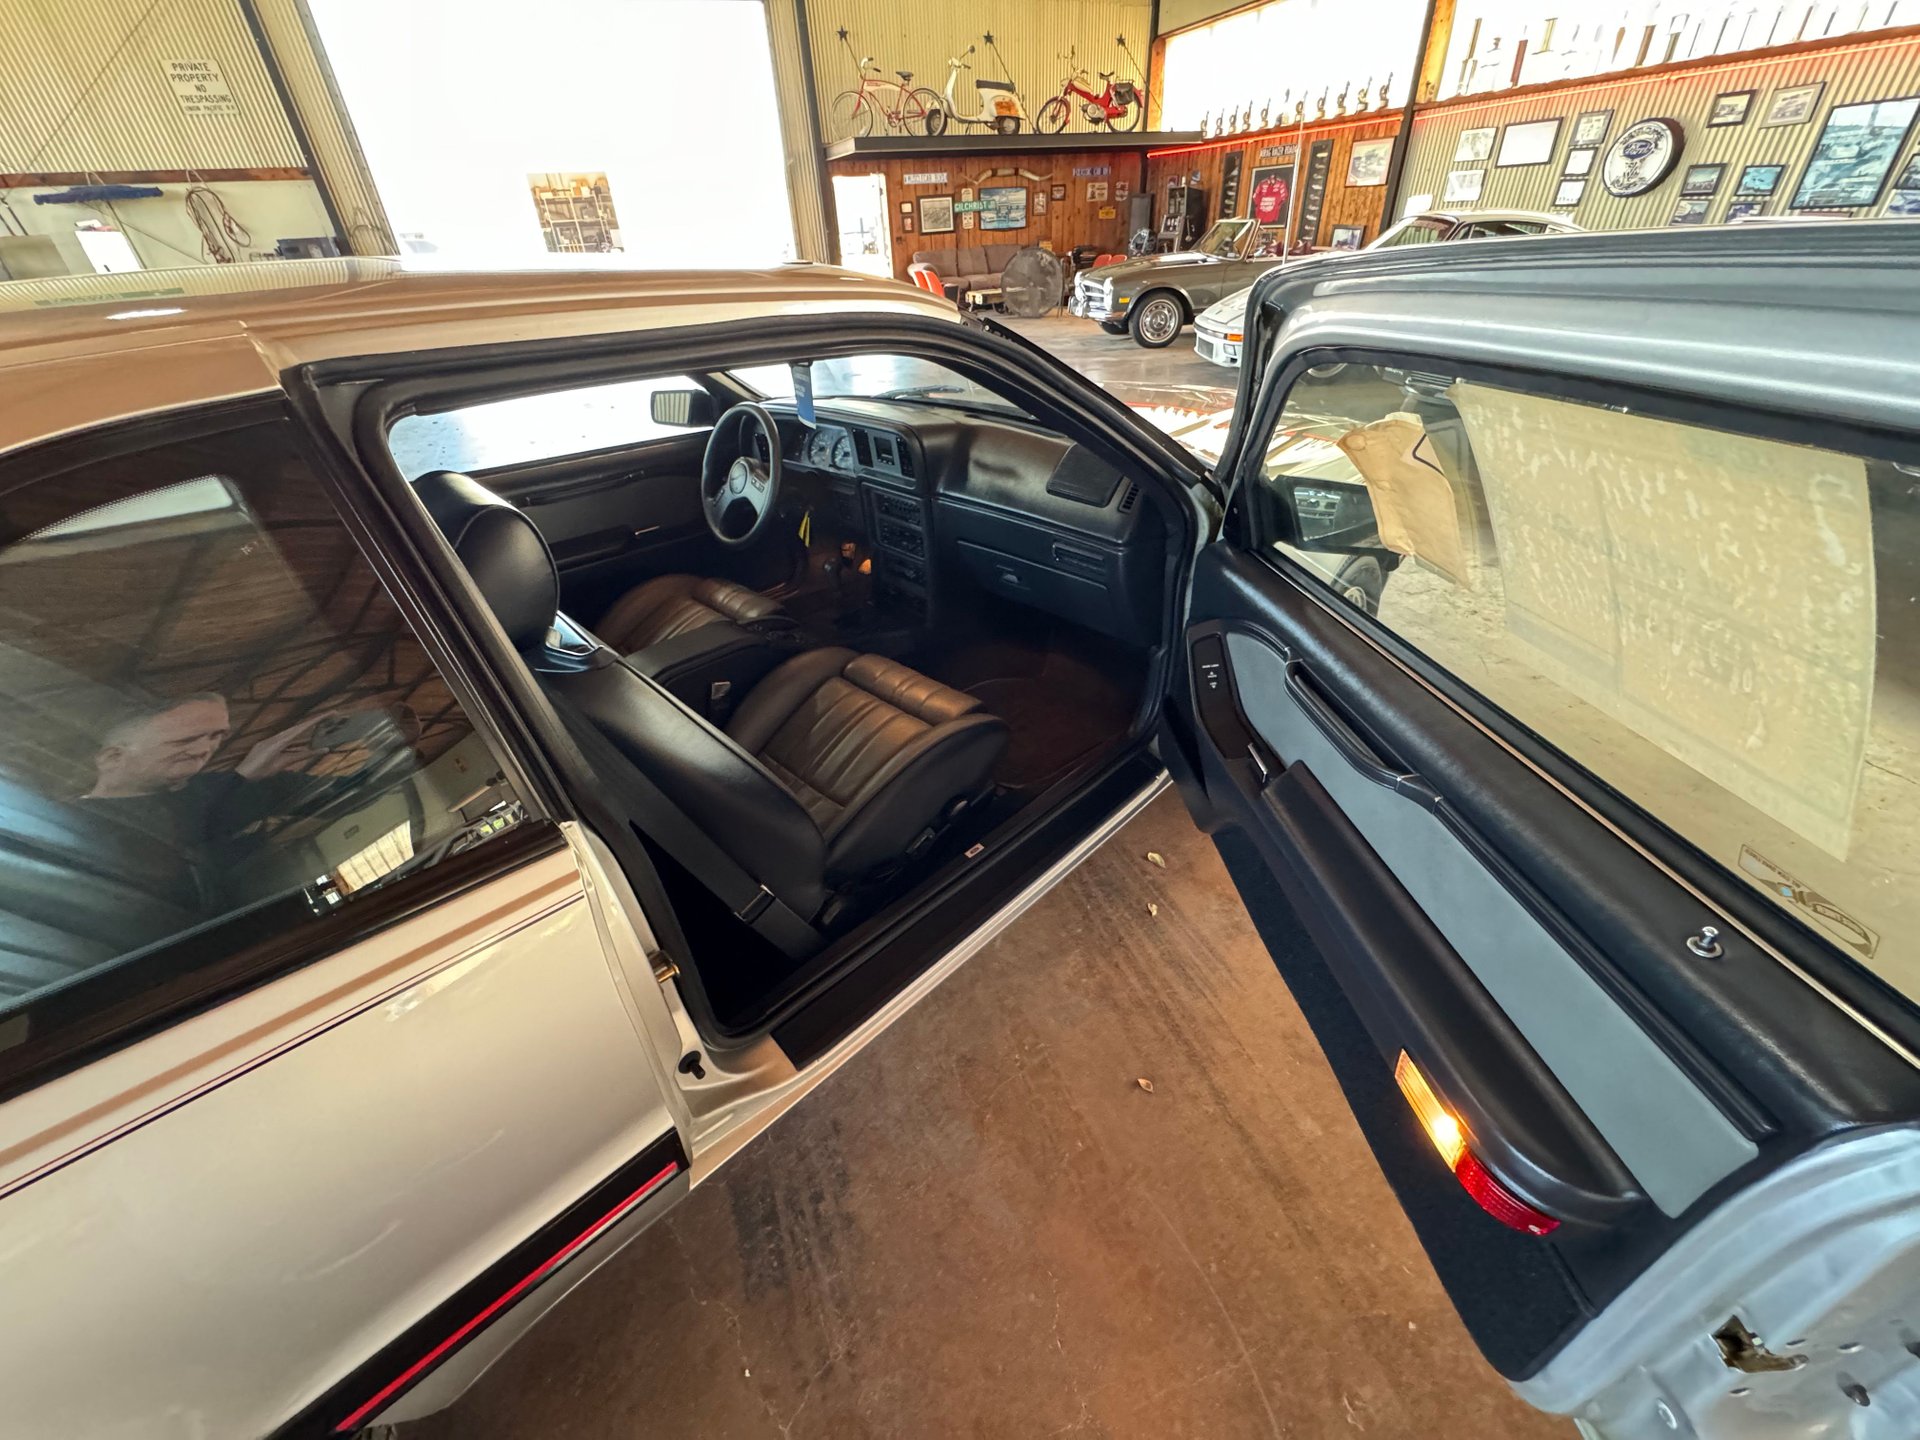 25276 | 1988 Ford Thunderbird Turbo Coupe |  Frank's Car Barn